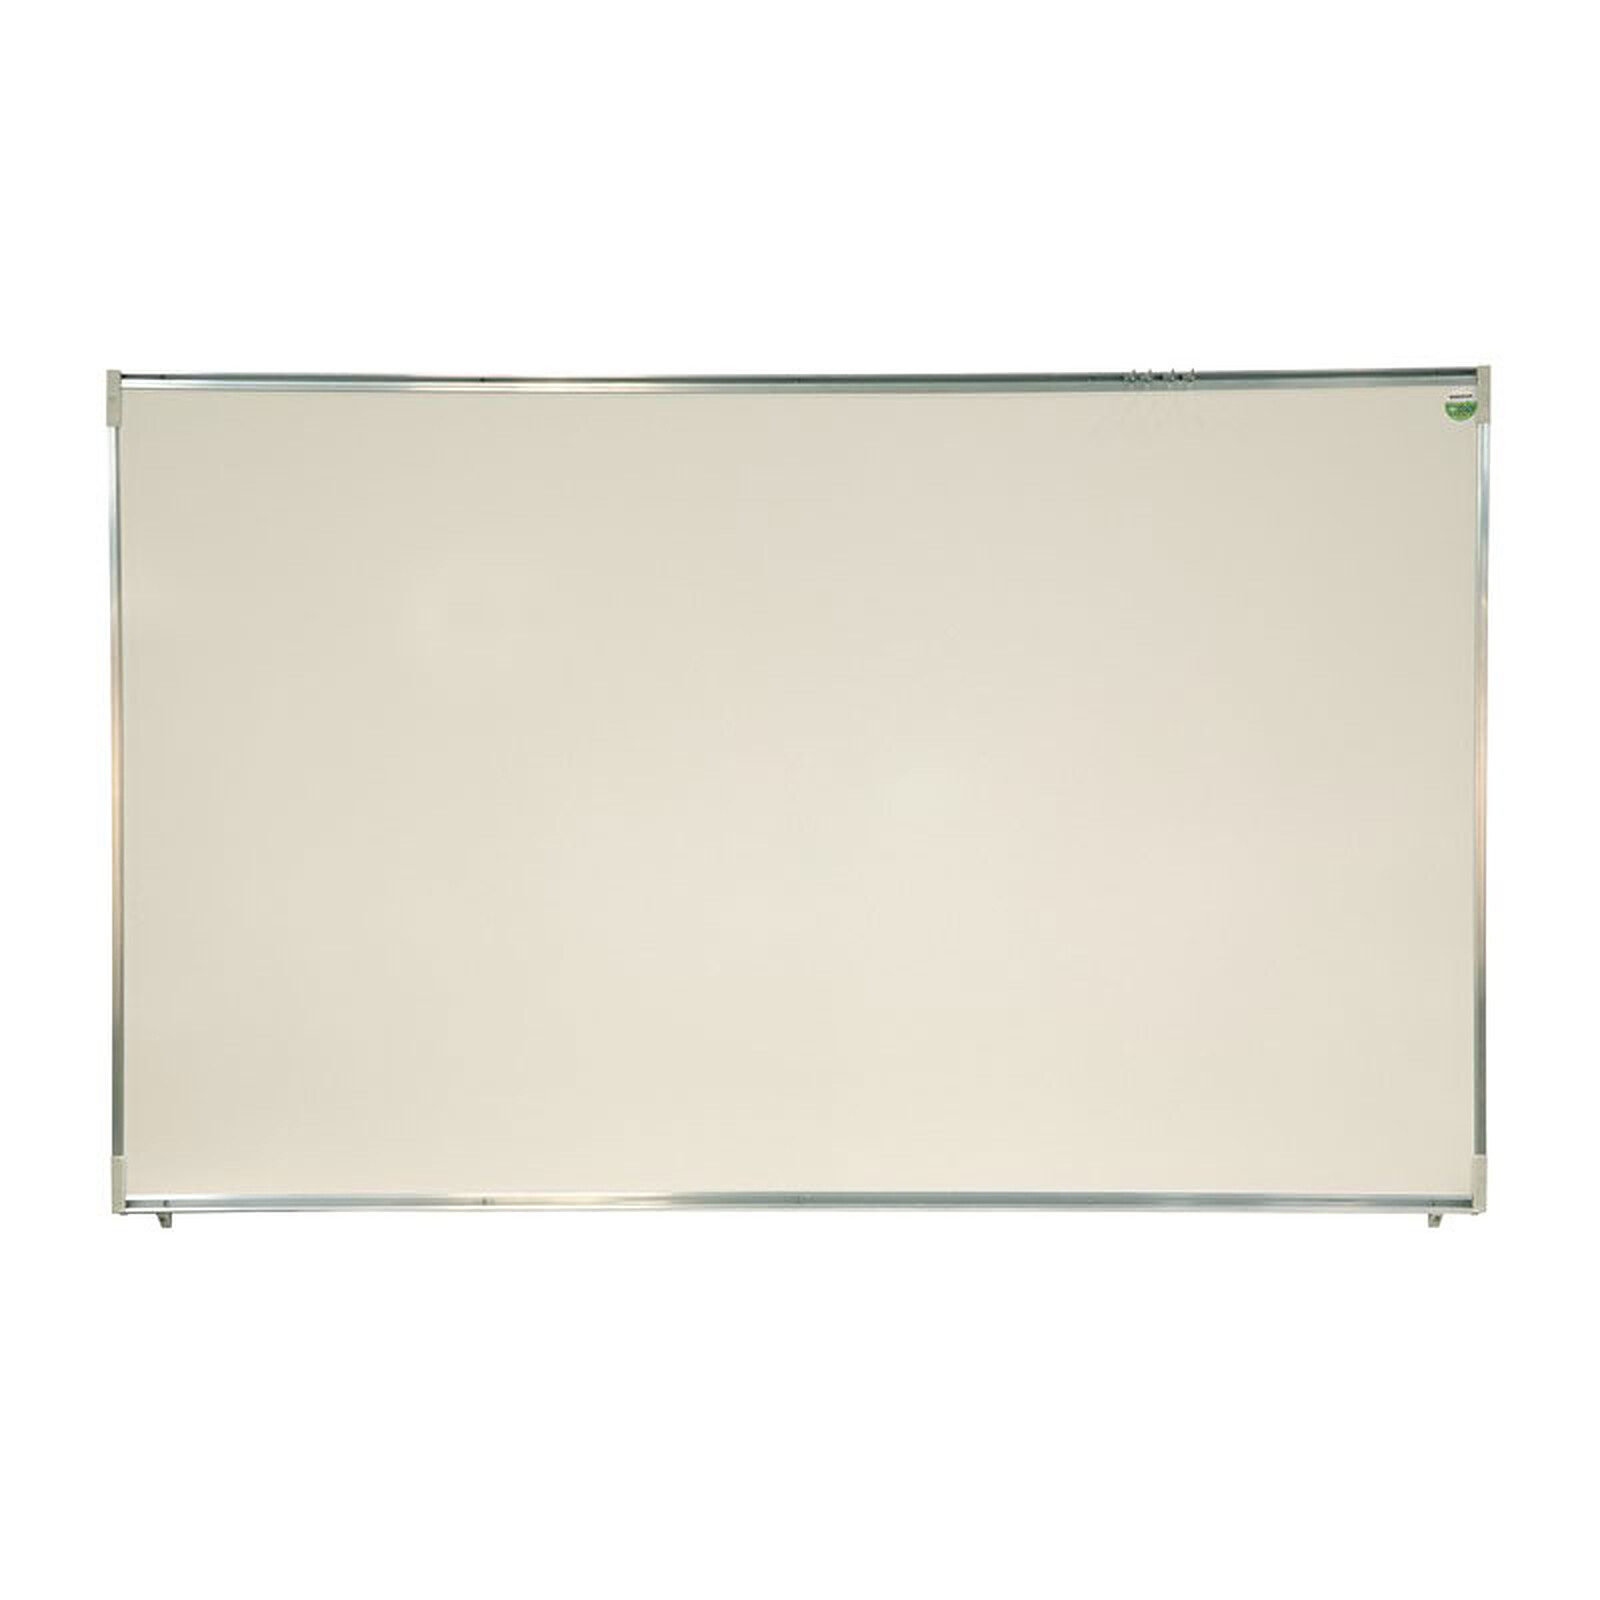 Rouleau adhésif Velleda blanc 100 x 200 cm - Tableaux, panneaux